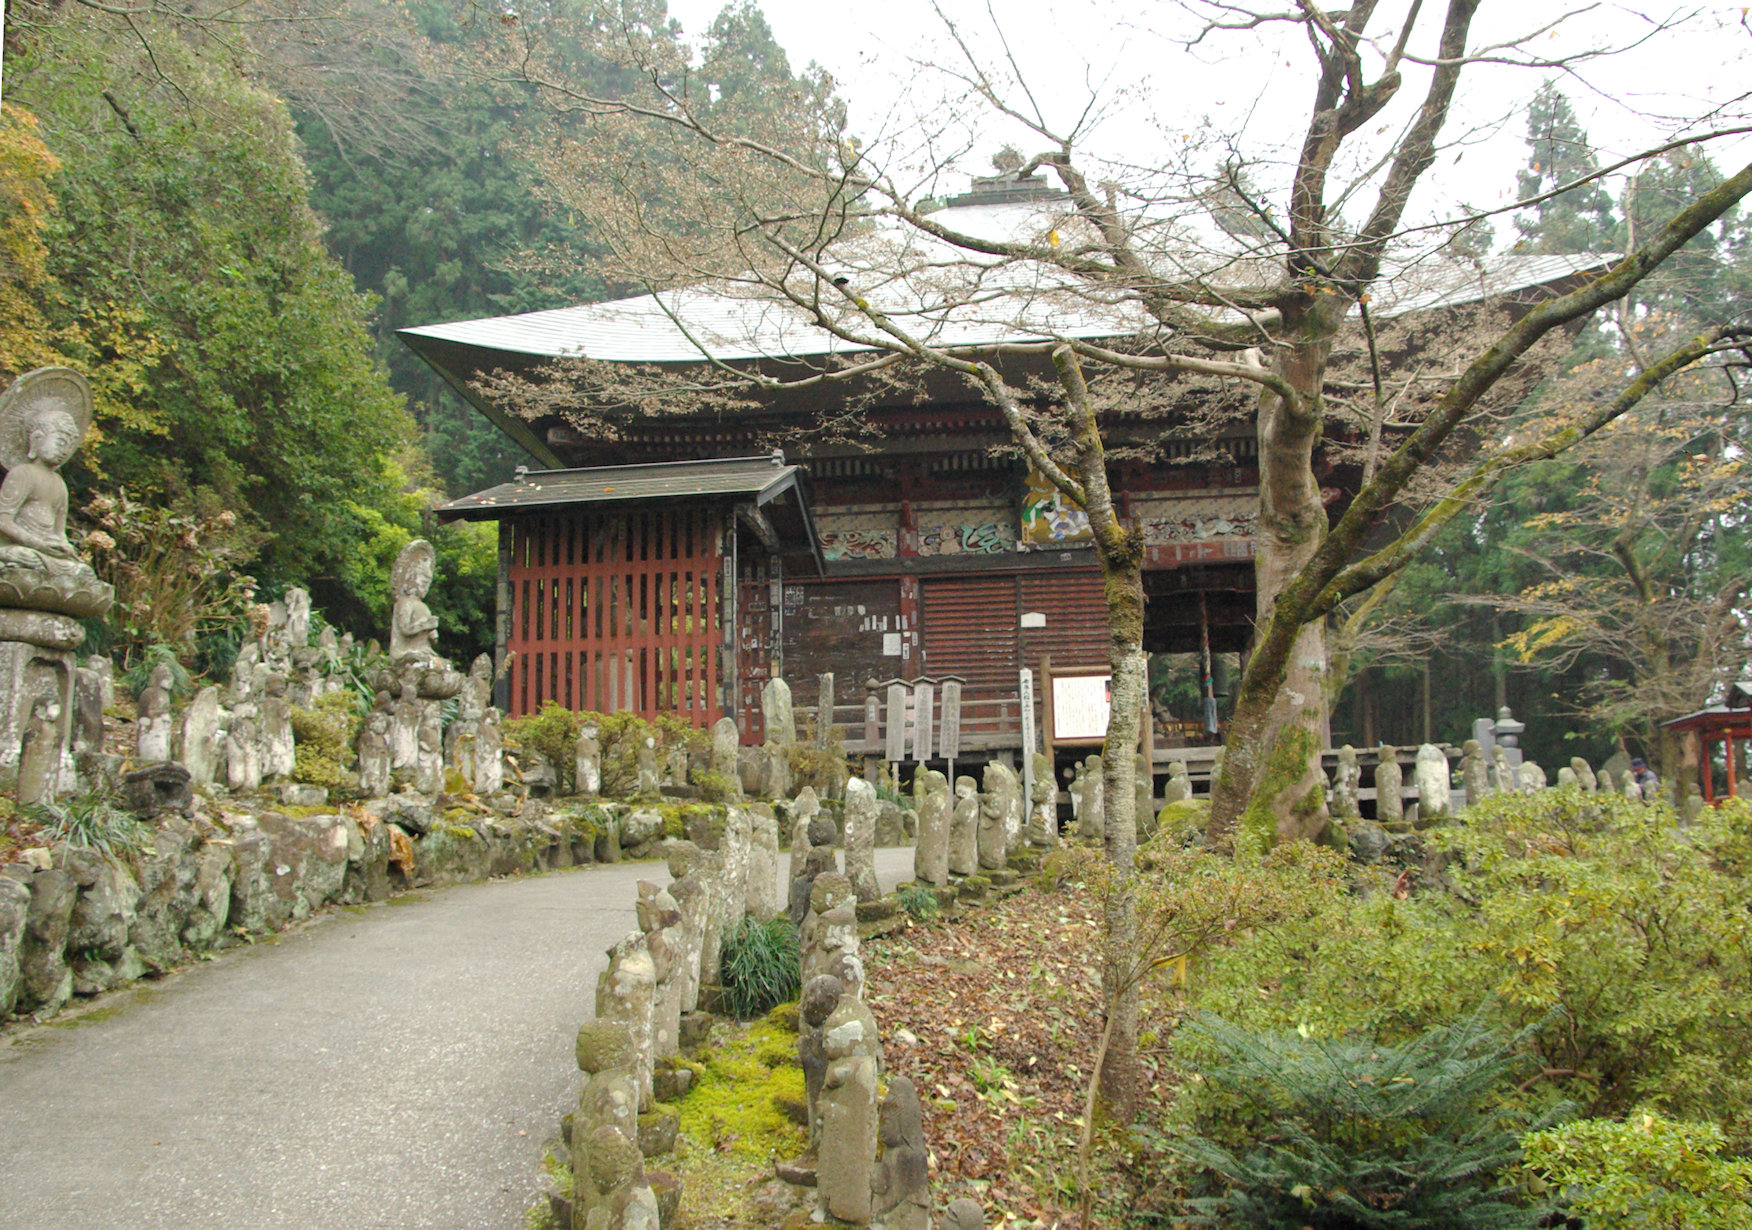 Approach to the main temple of Kouyasan-Kinshouji Temple, Chichibu, Saitama Prefecture. (30/11/2007).